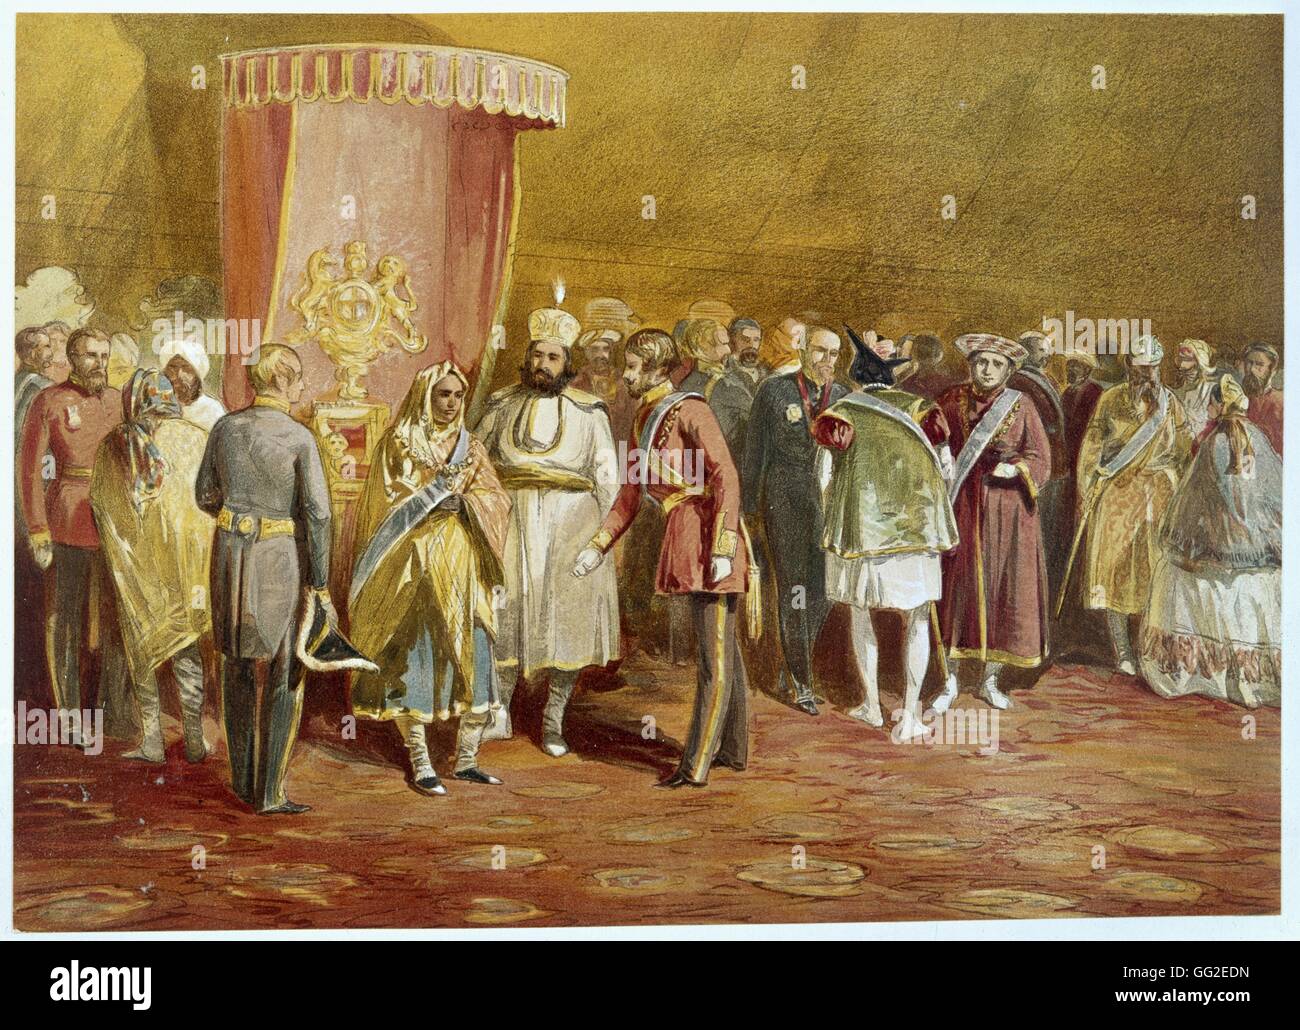 William Simpson erste Zeremonie der Verleihung des Ordens der Star of India Indien Allahabad 1861 Stockfoto